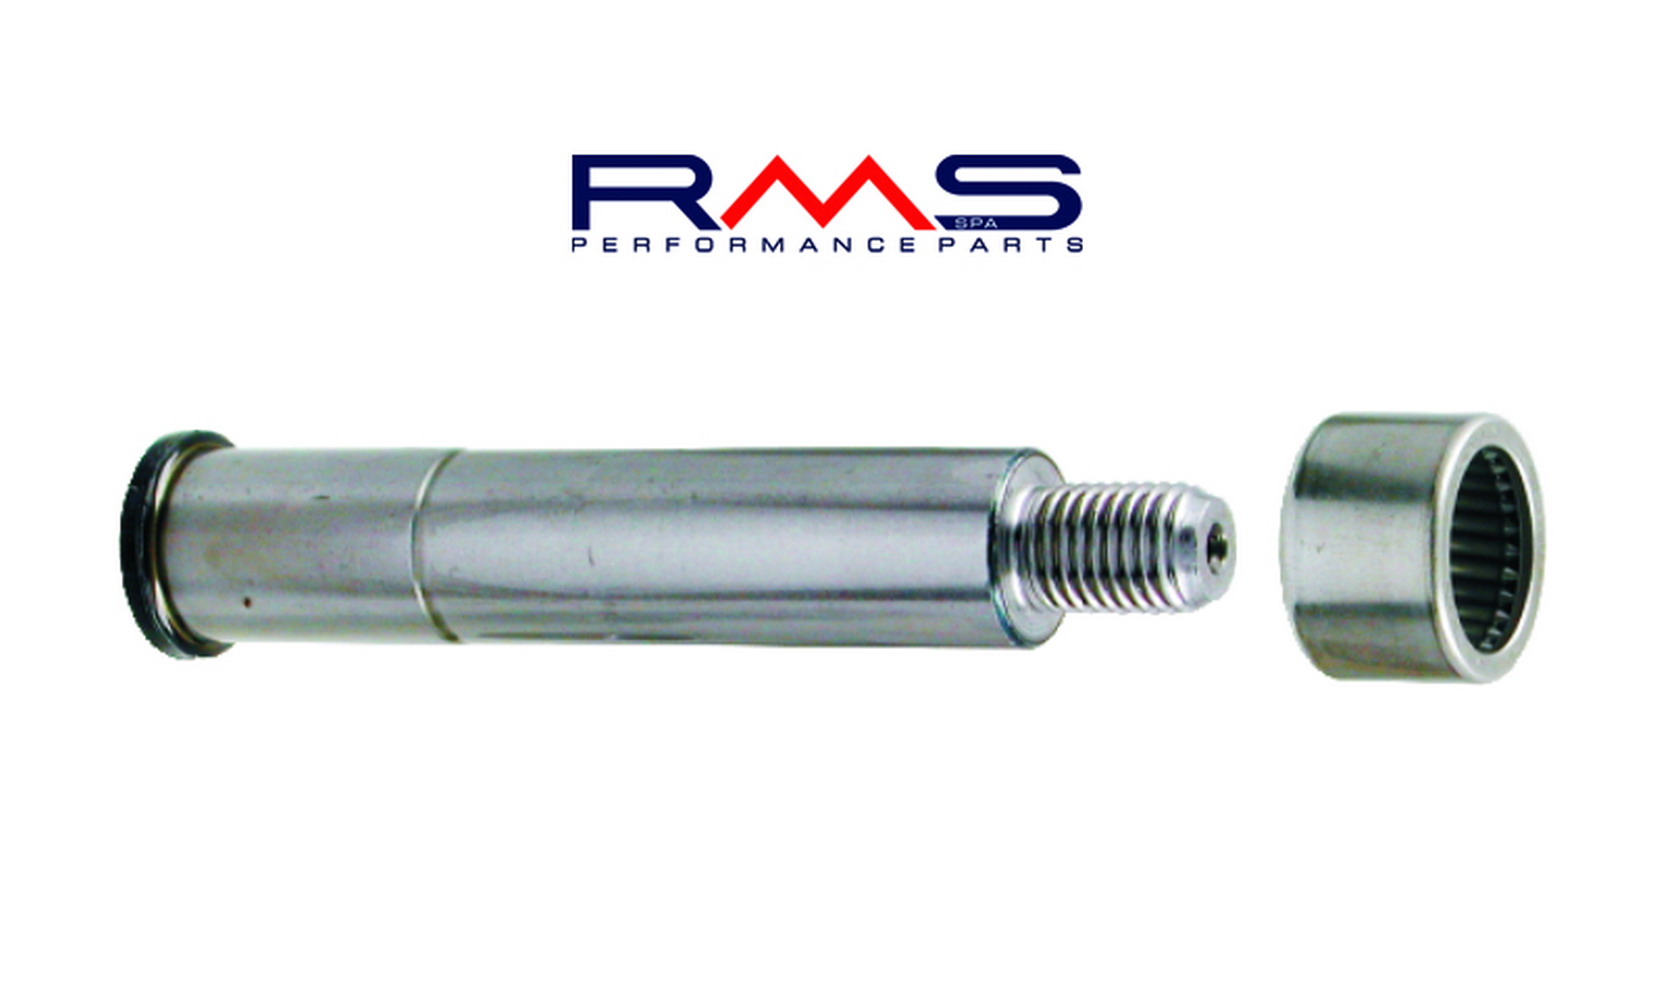 Obrázek produktu Suspension pin RMS 225180110 přední with grease nipple 225180110